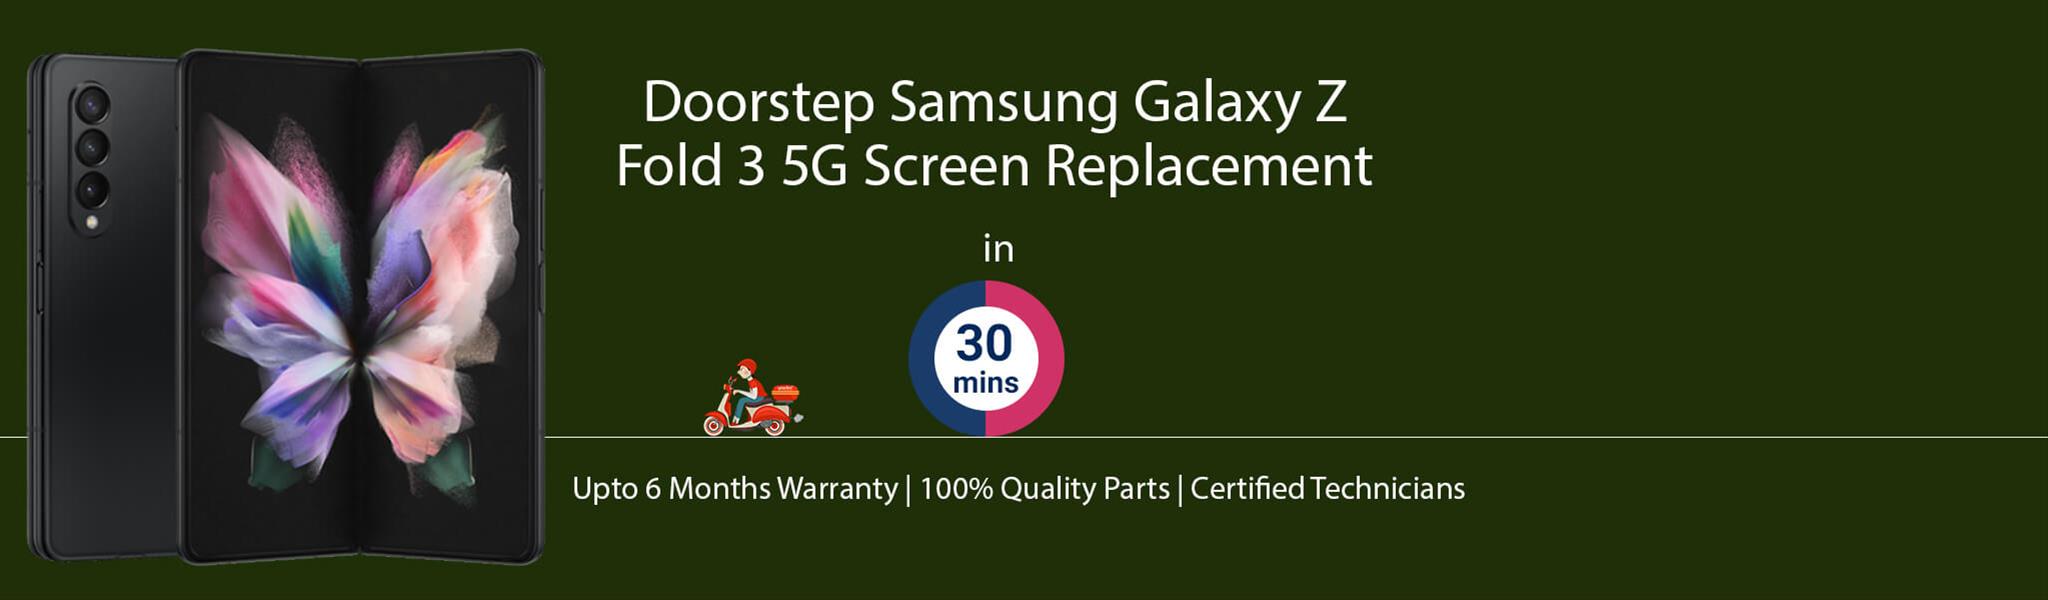 samsung-galaxy-z-fold-3-5g-screen-replacement-banner.jpg